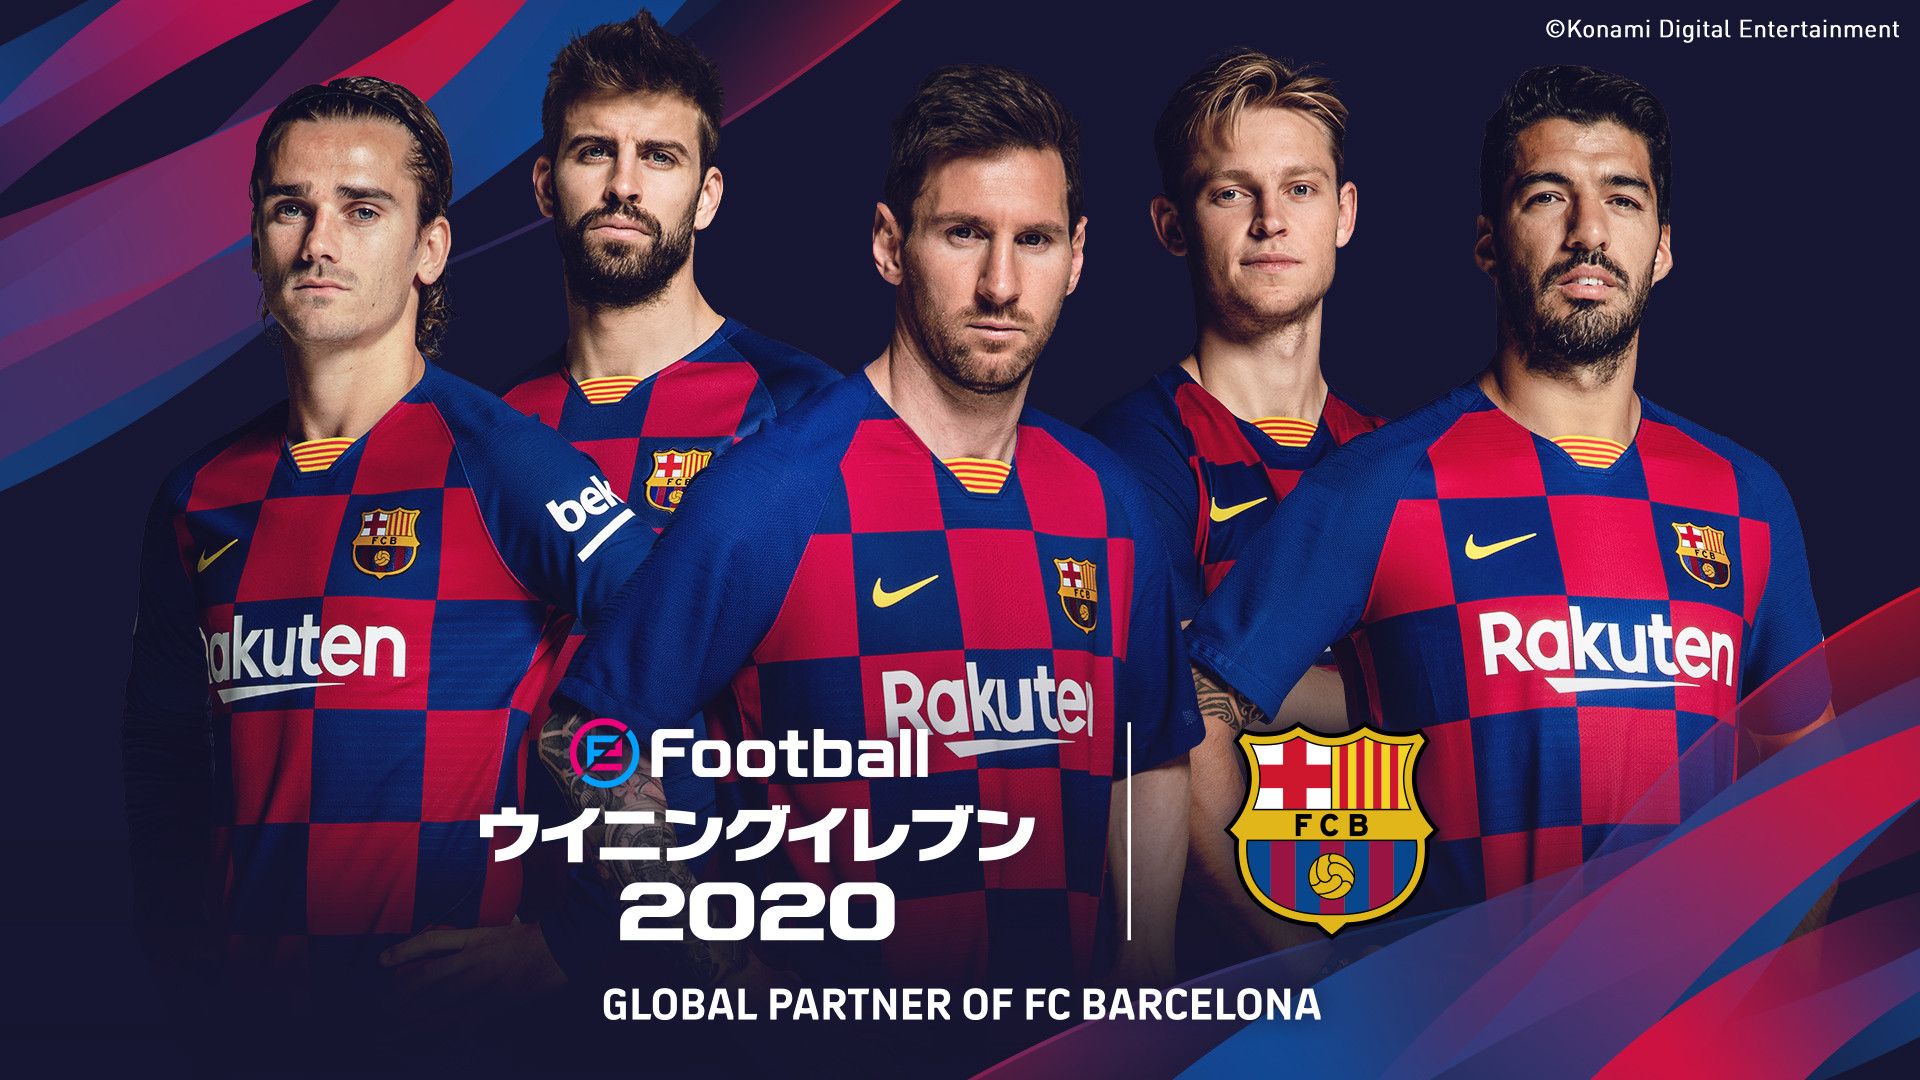 Efootball ウイニングイレブン 追加コンテンツの配信と シリーズ初となるmyclub クラブスカッド の販売を開始 Esports World Eスポーツワールド